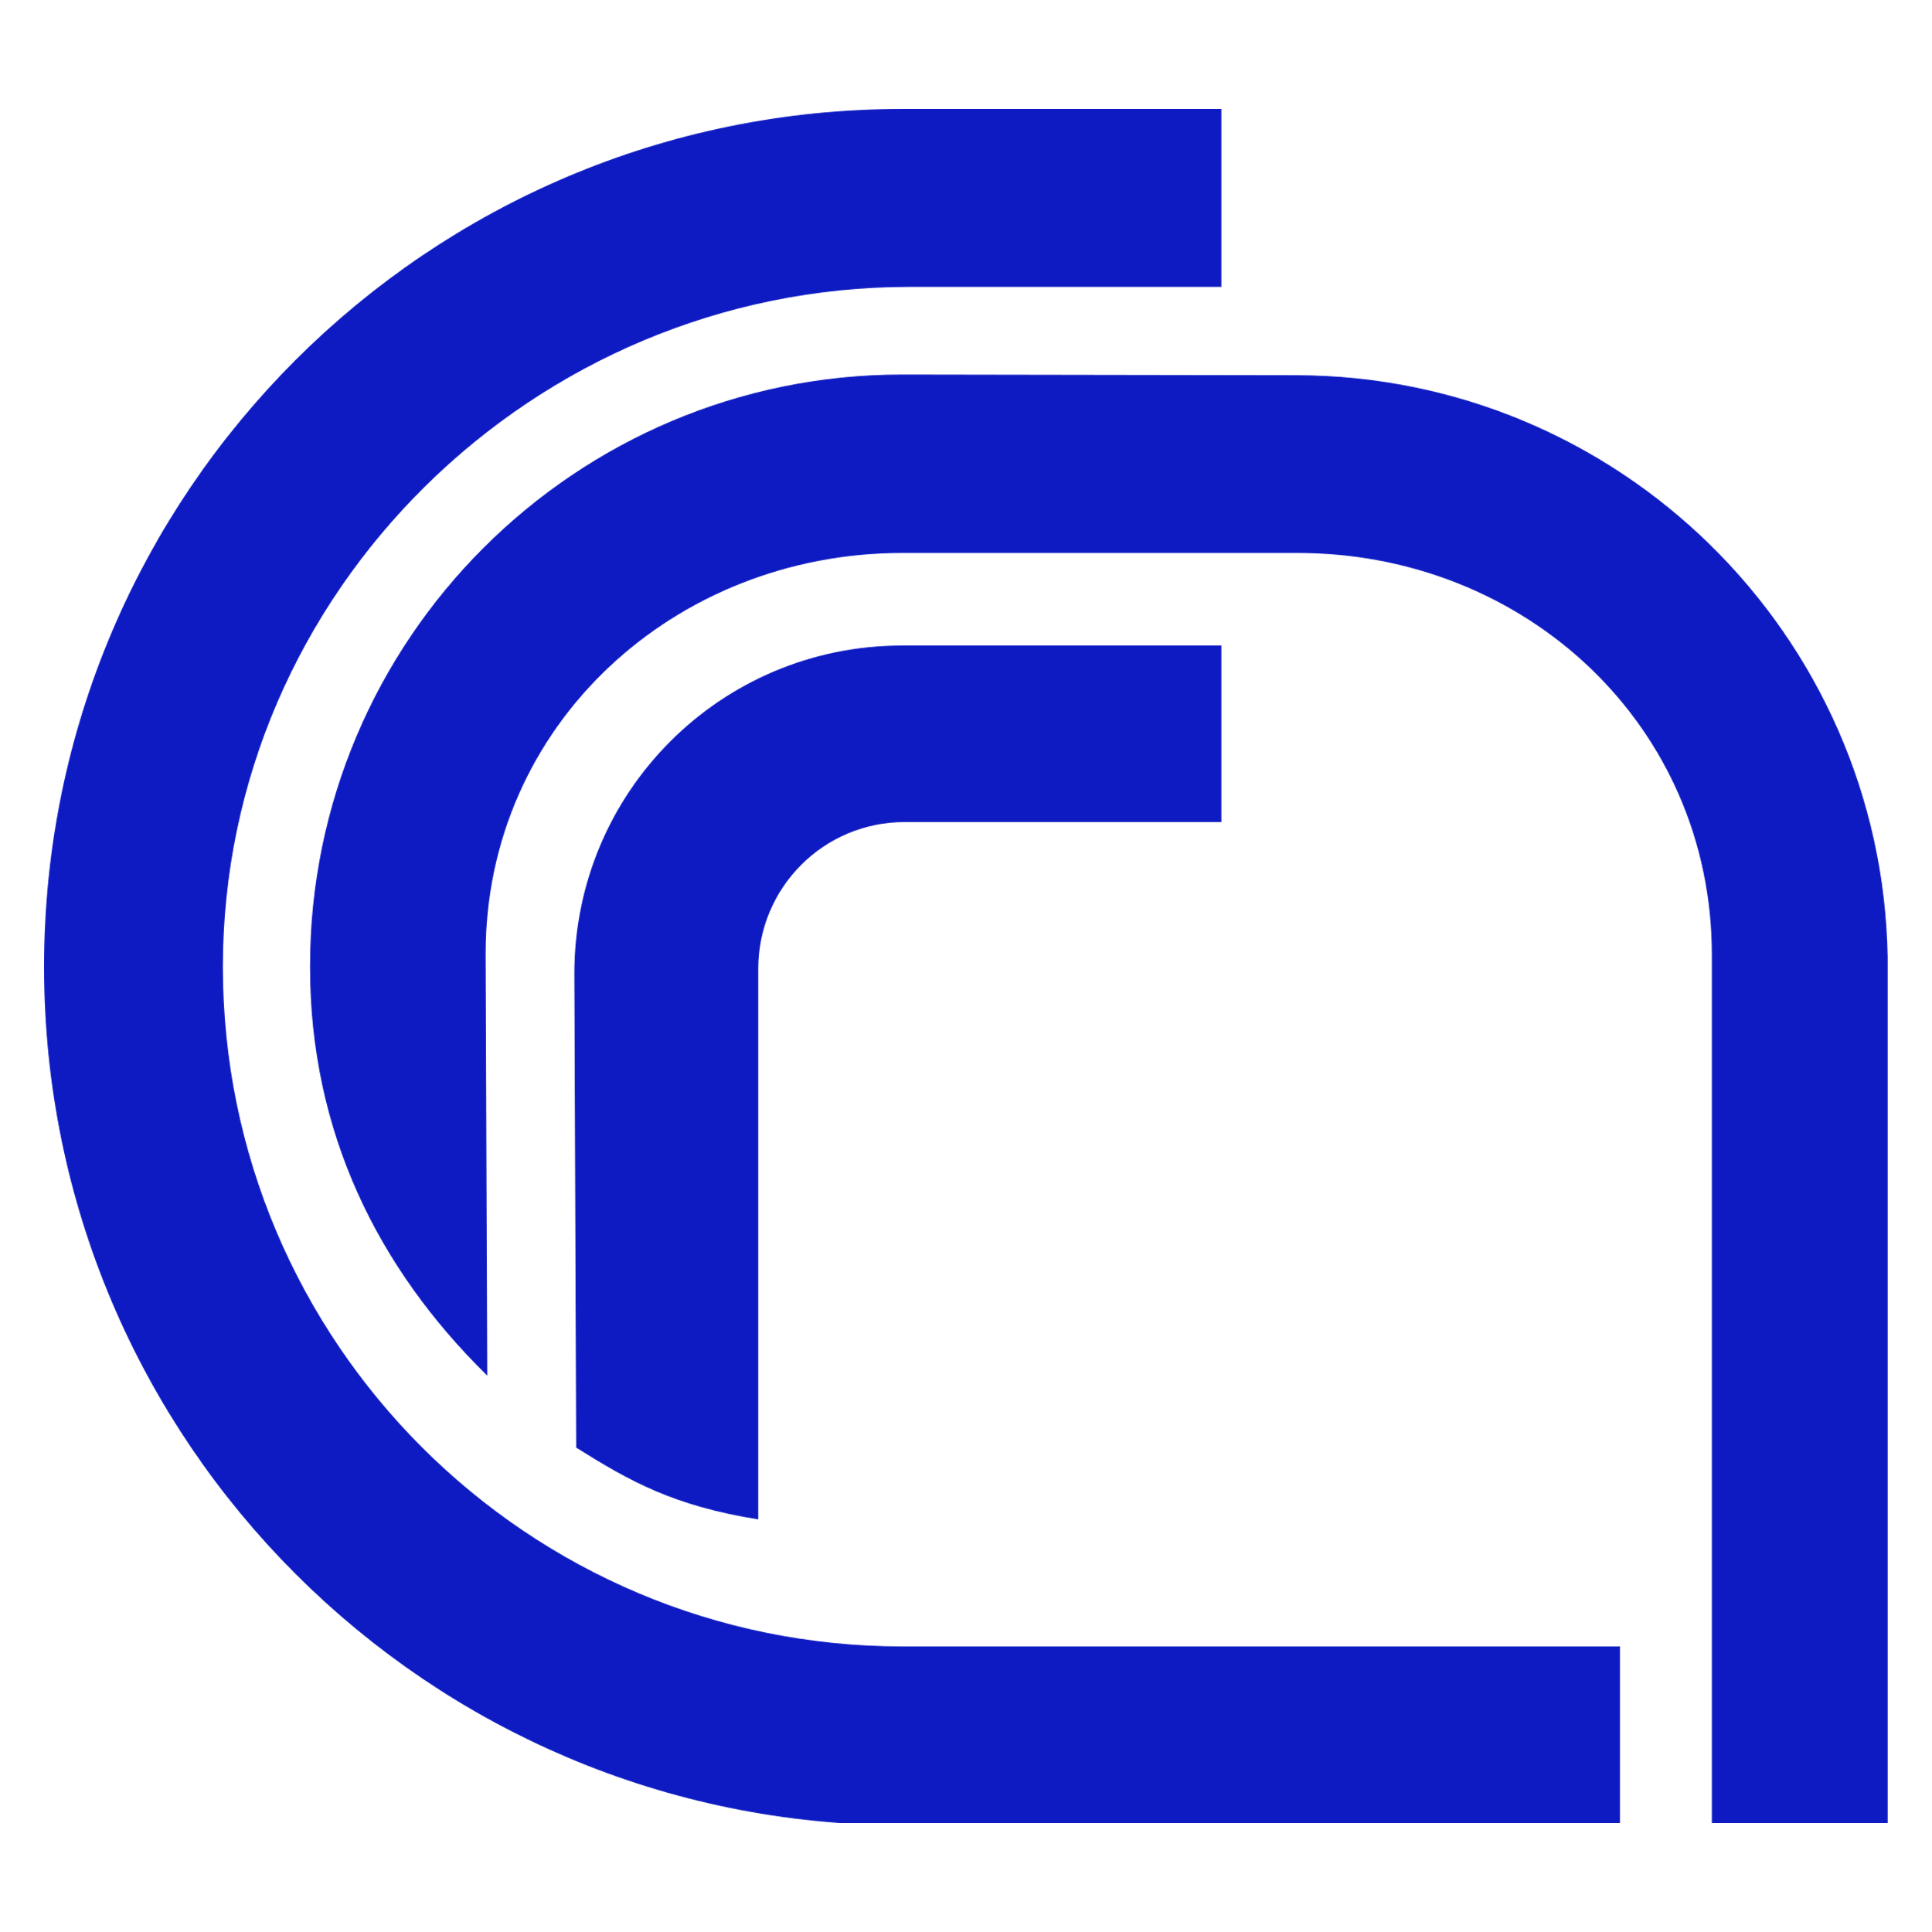 CNR Without Text Logo  Transparent Clipart